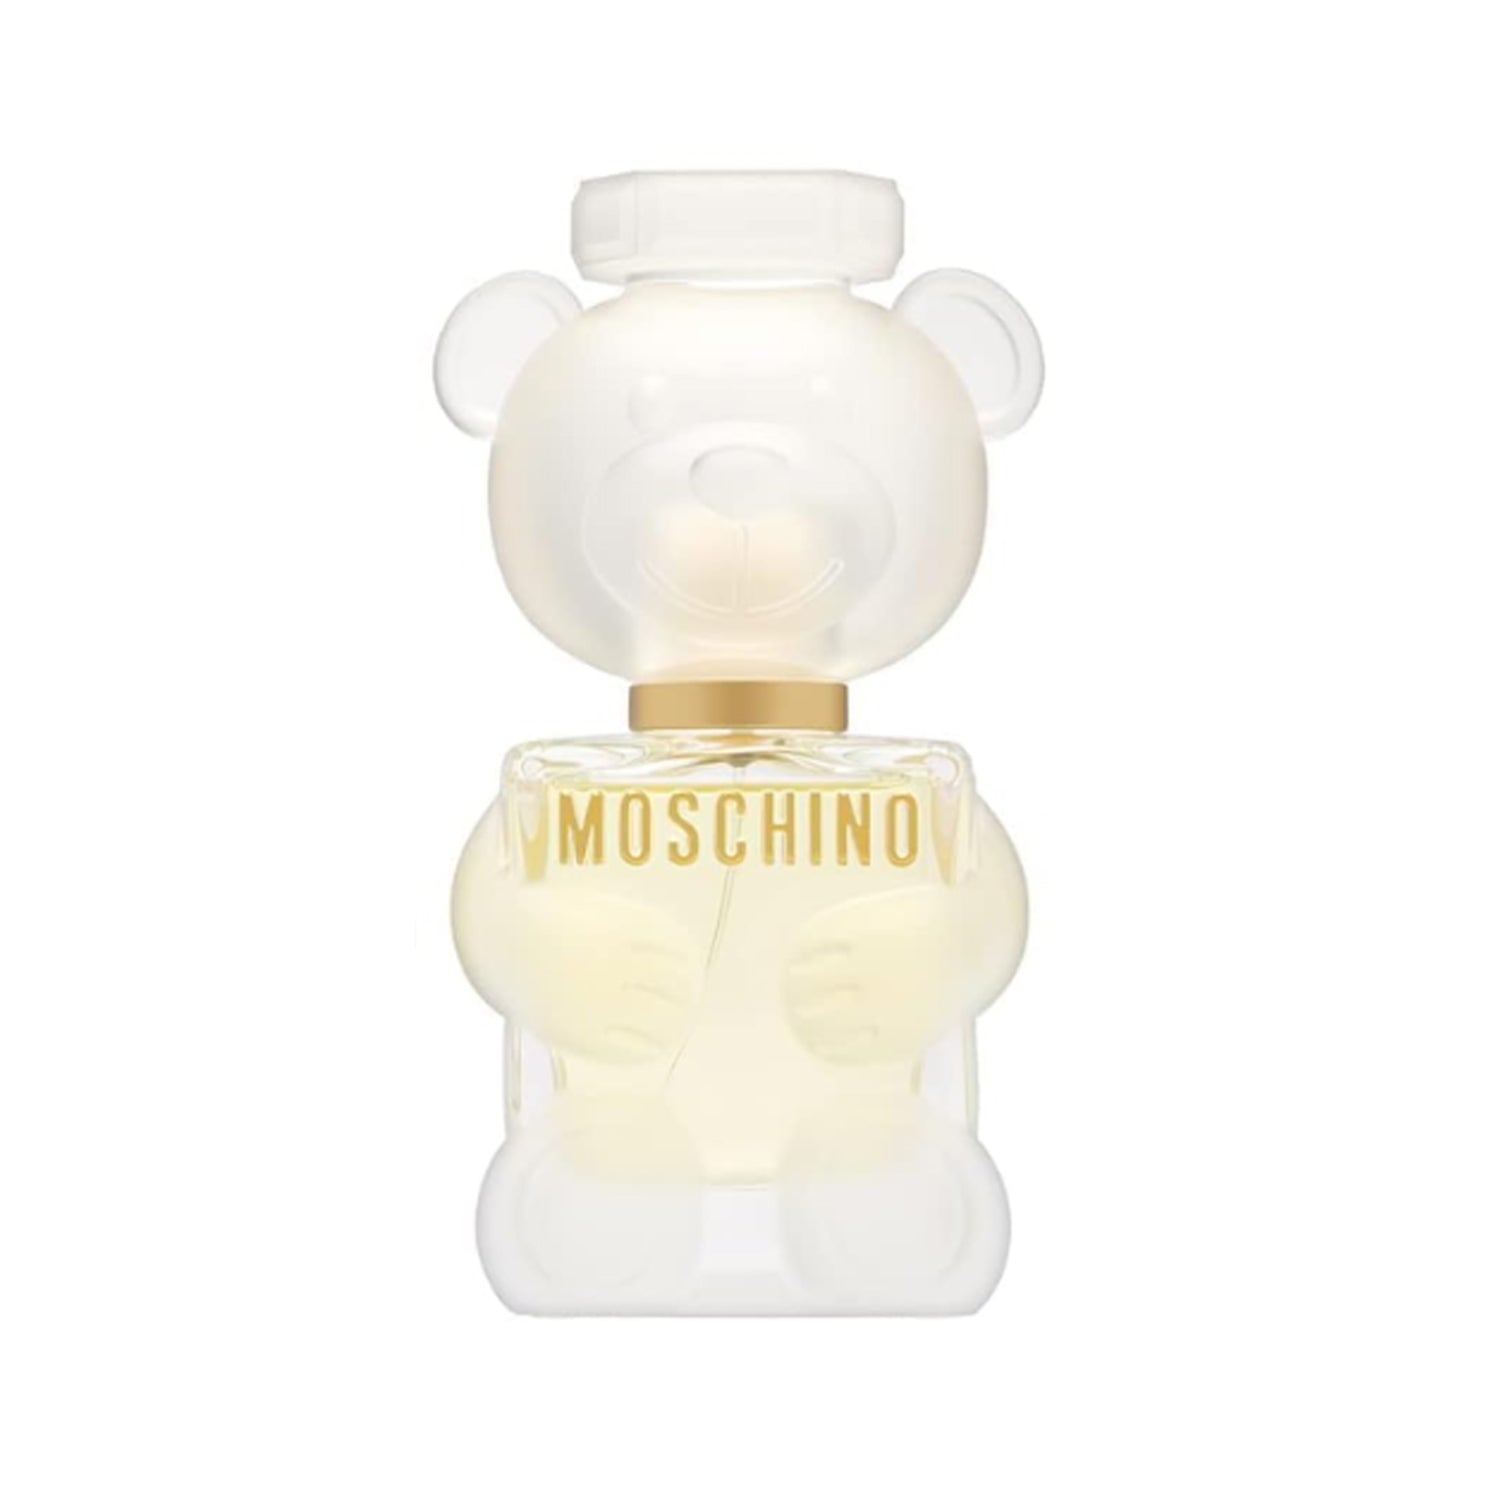 Moschino Toy-2 50ml Eau De Parfum Spary For Women